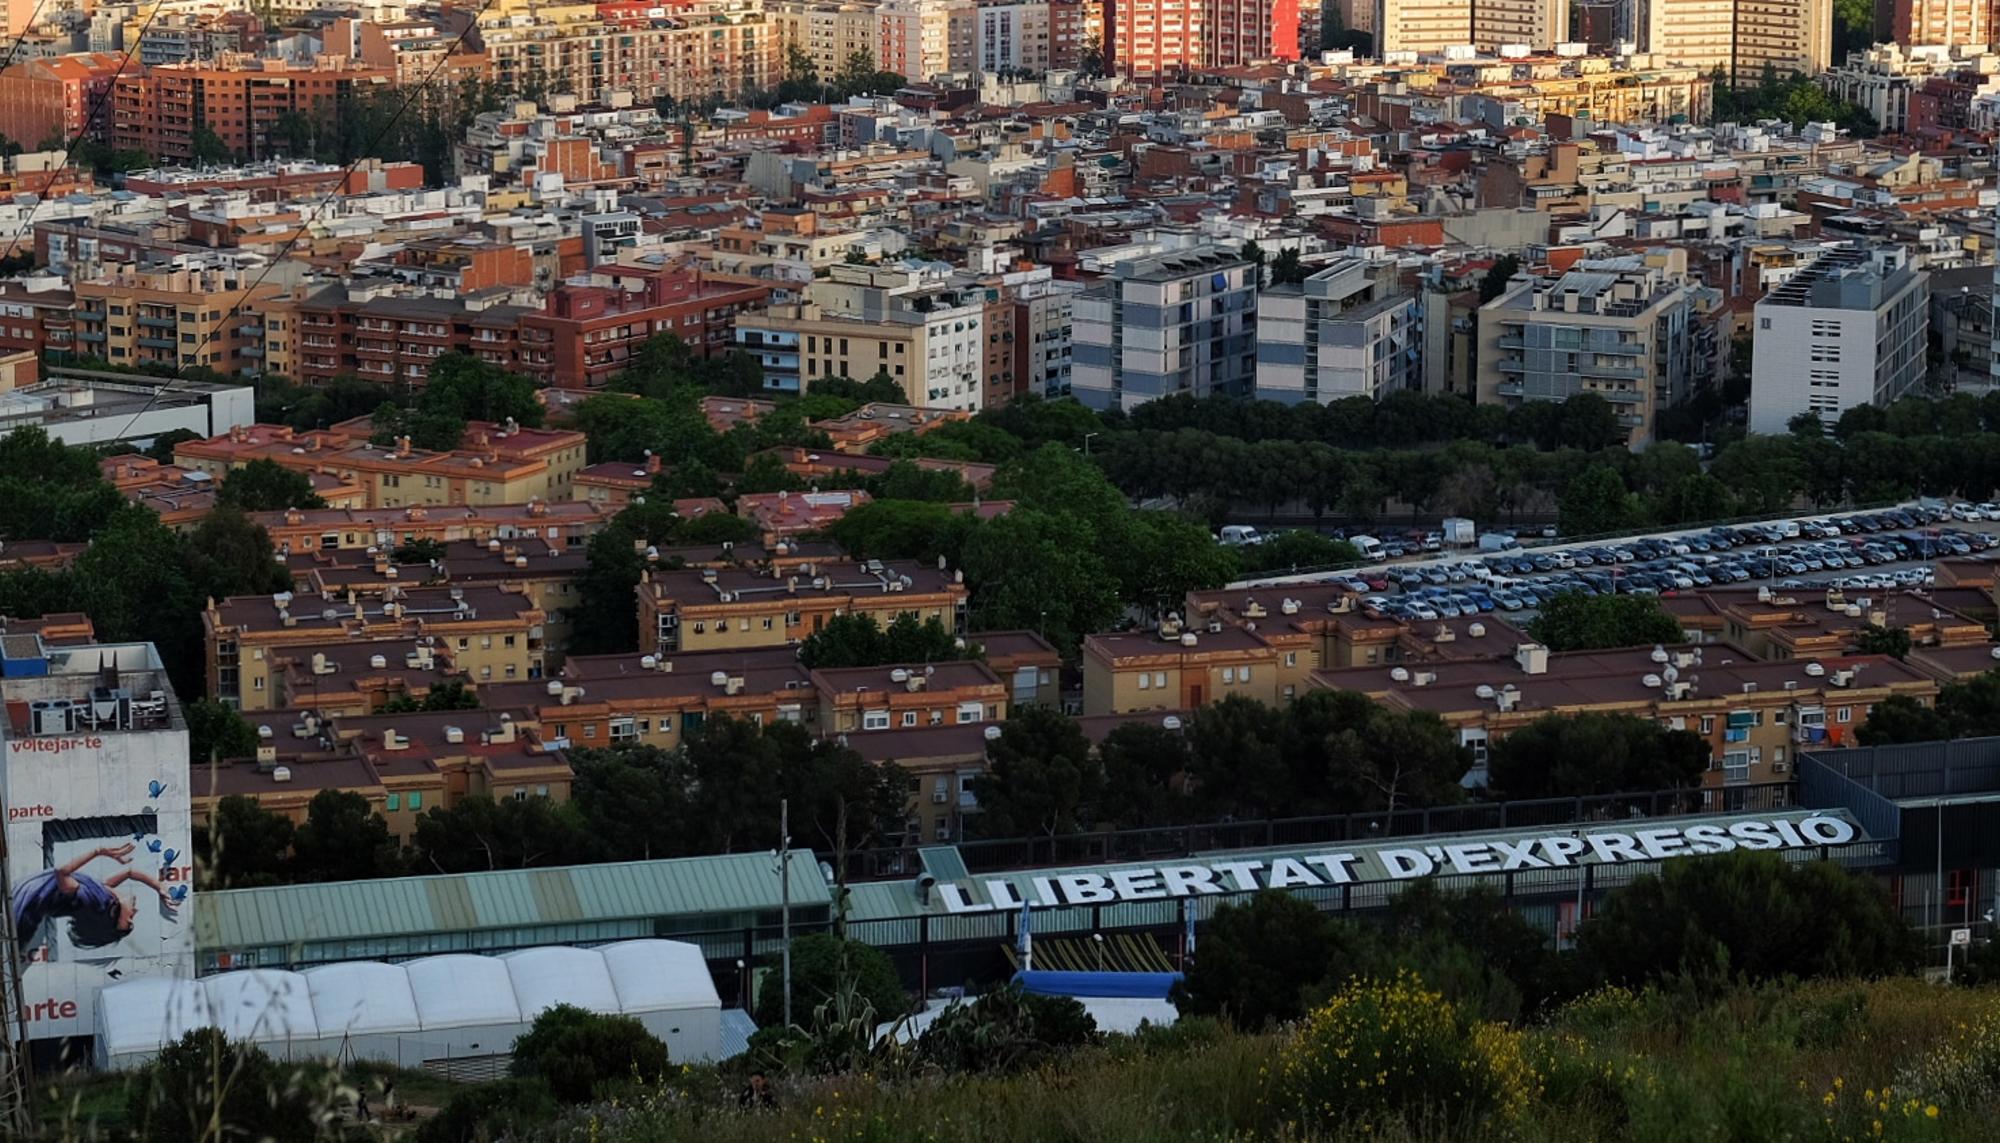 Pintada de 57 metros con el mensaje ‘Llibertat d'expressió’ en el tejado del Ateneu Popular 9 Barris, en Barcelona